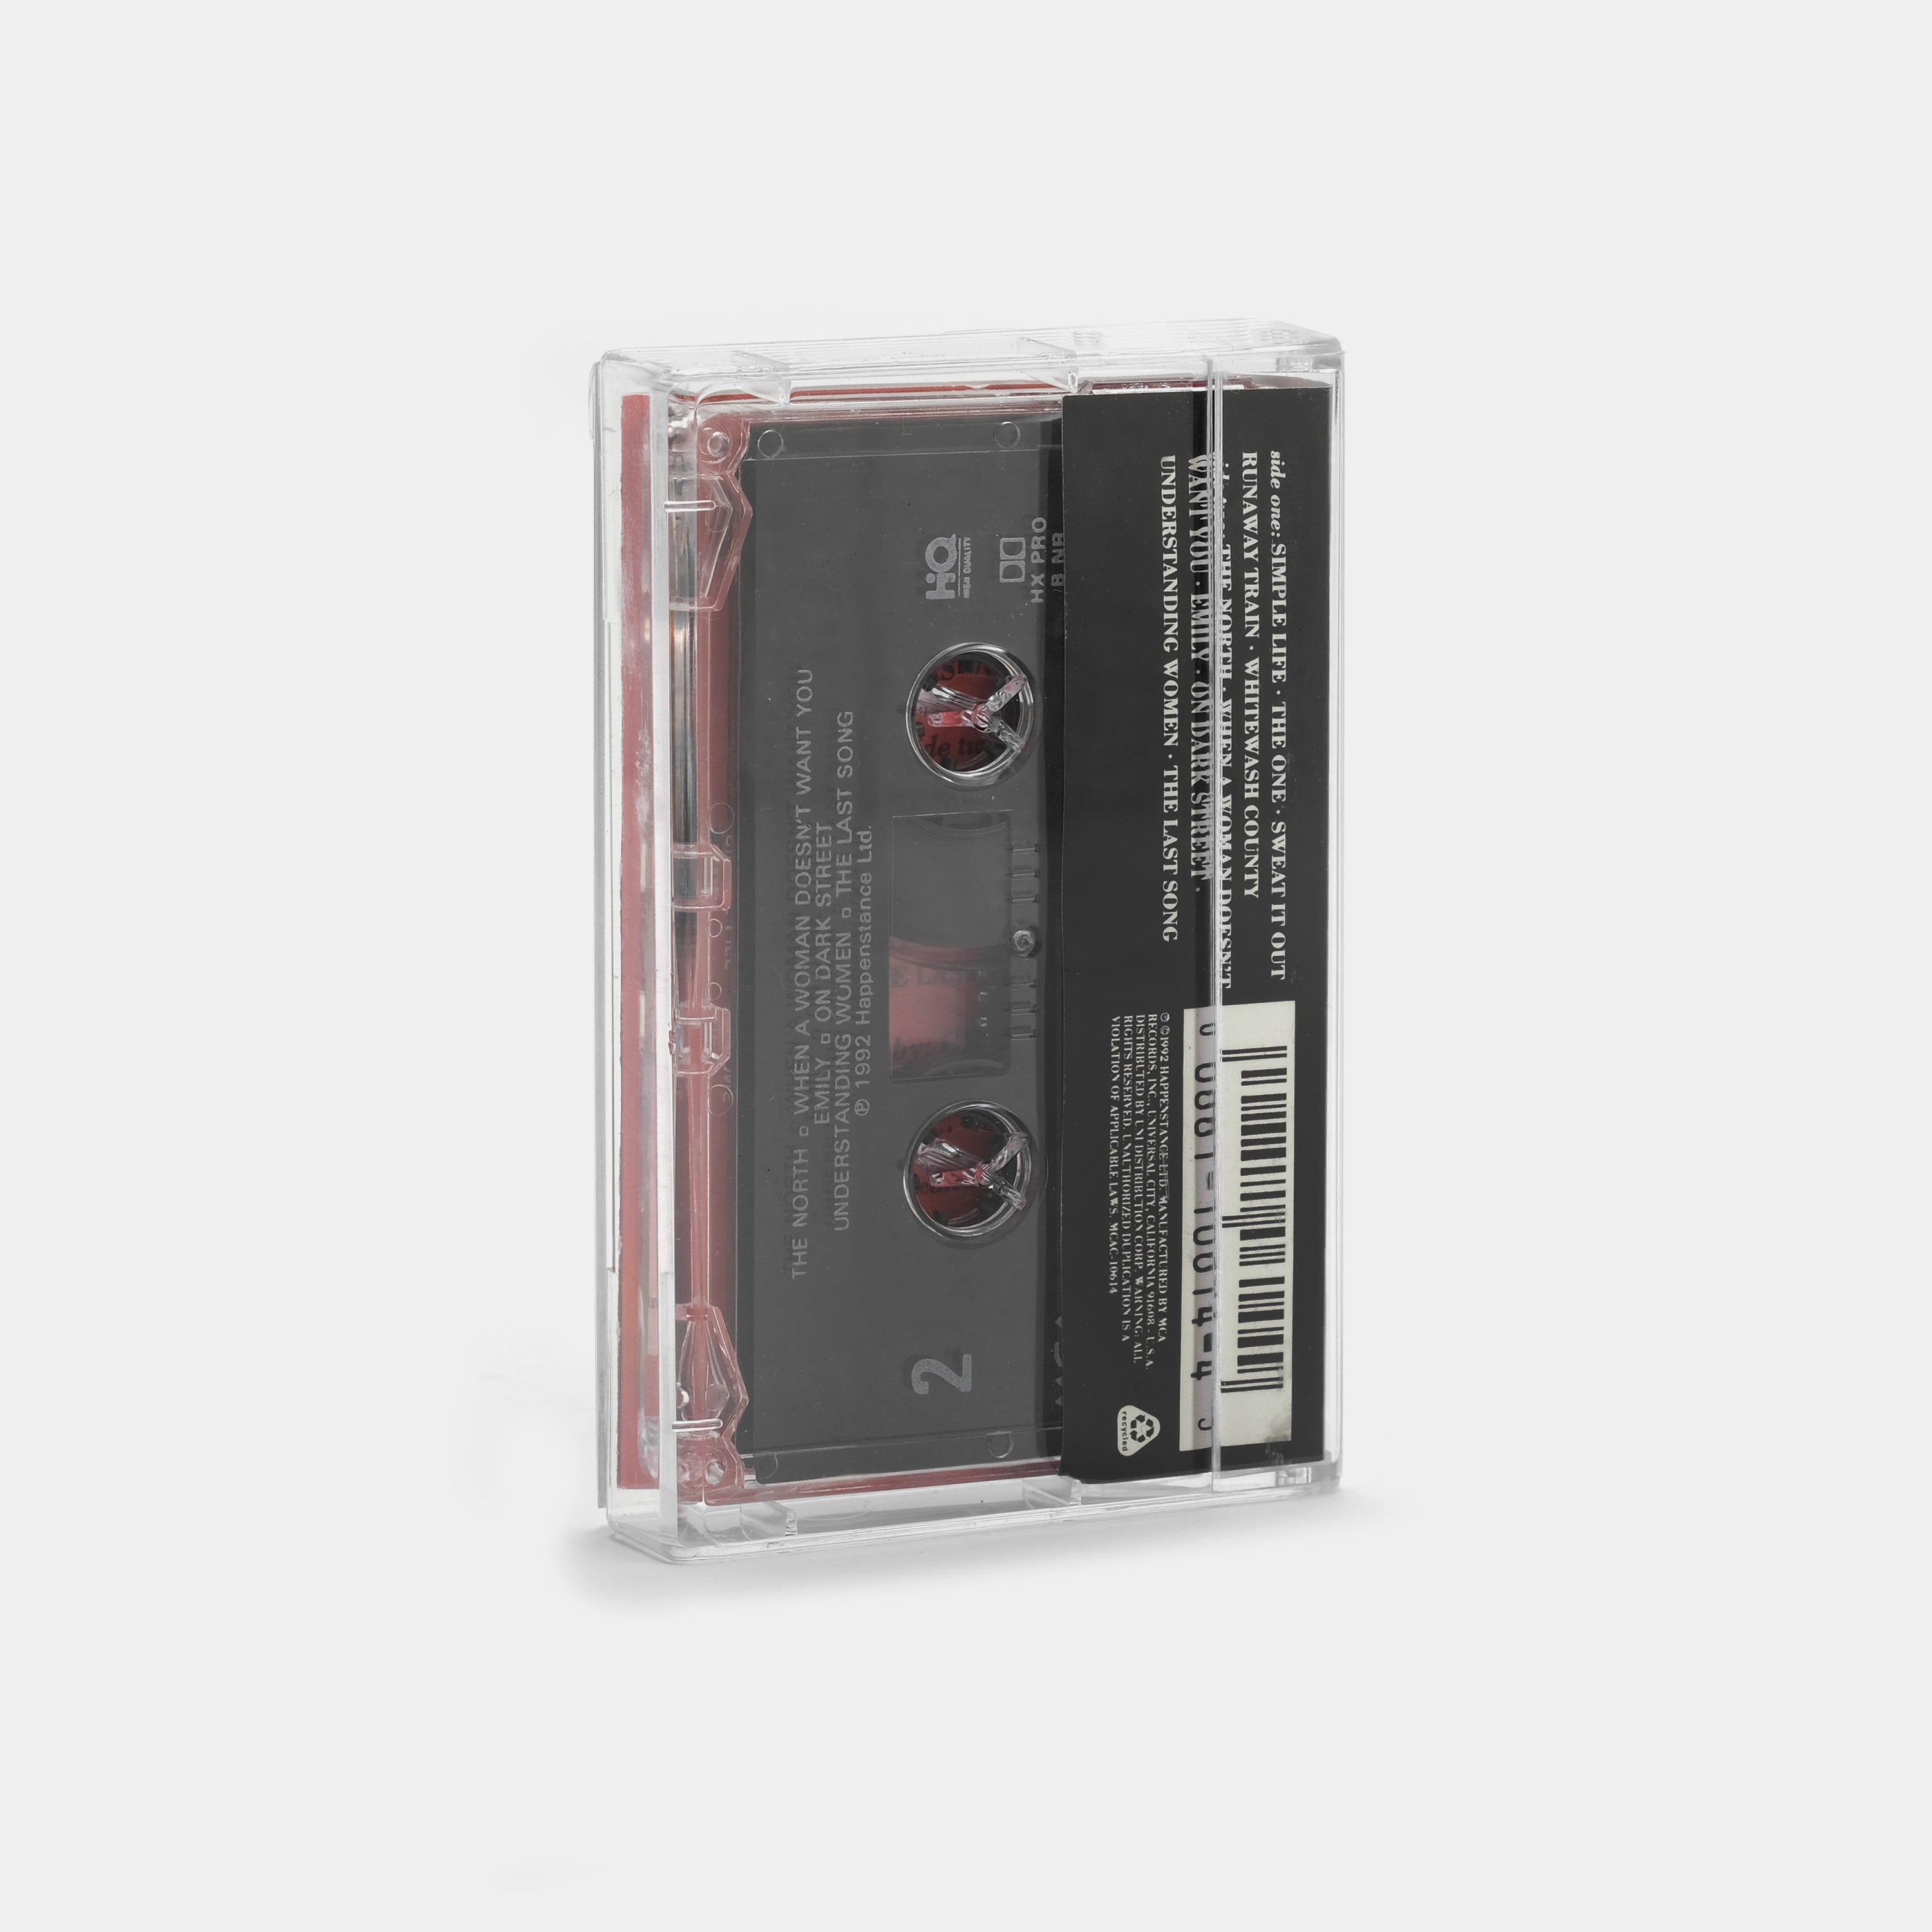 Elton John - The One Cassette Tape